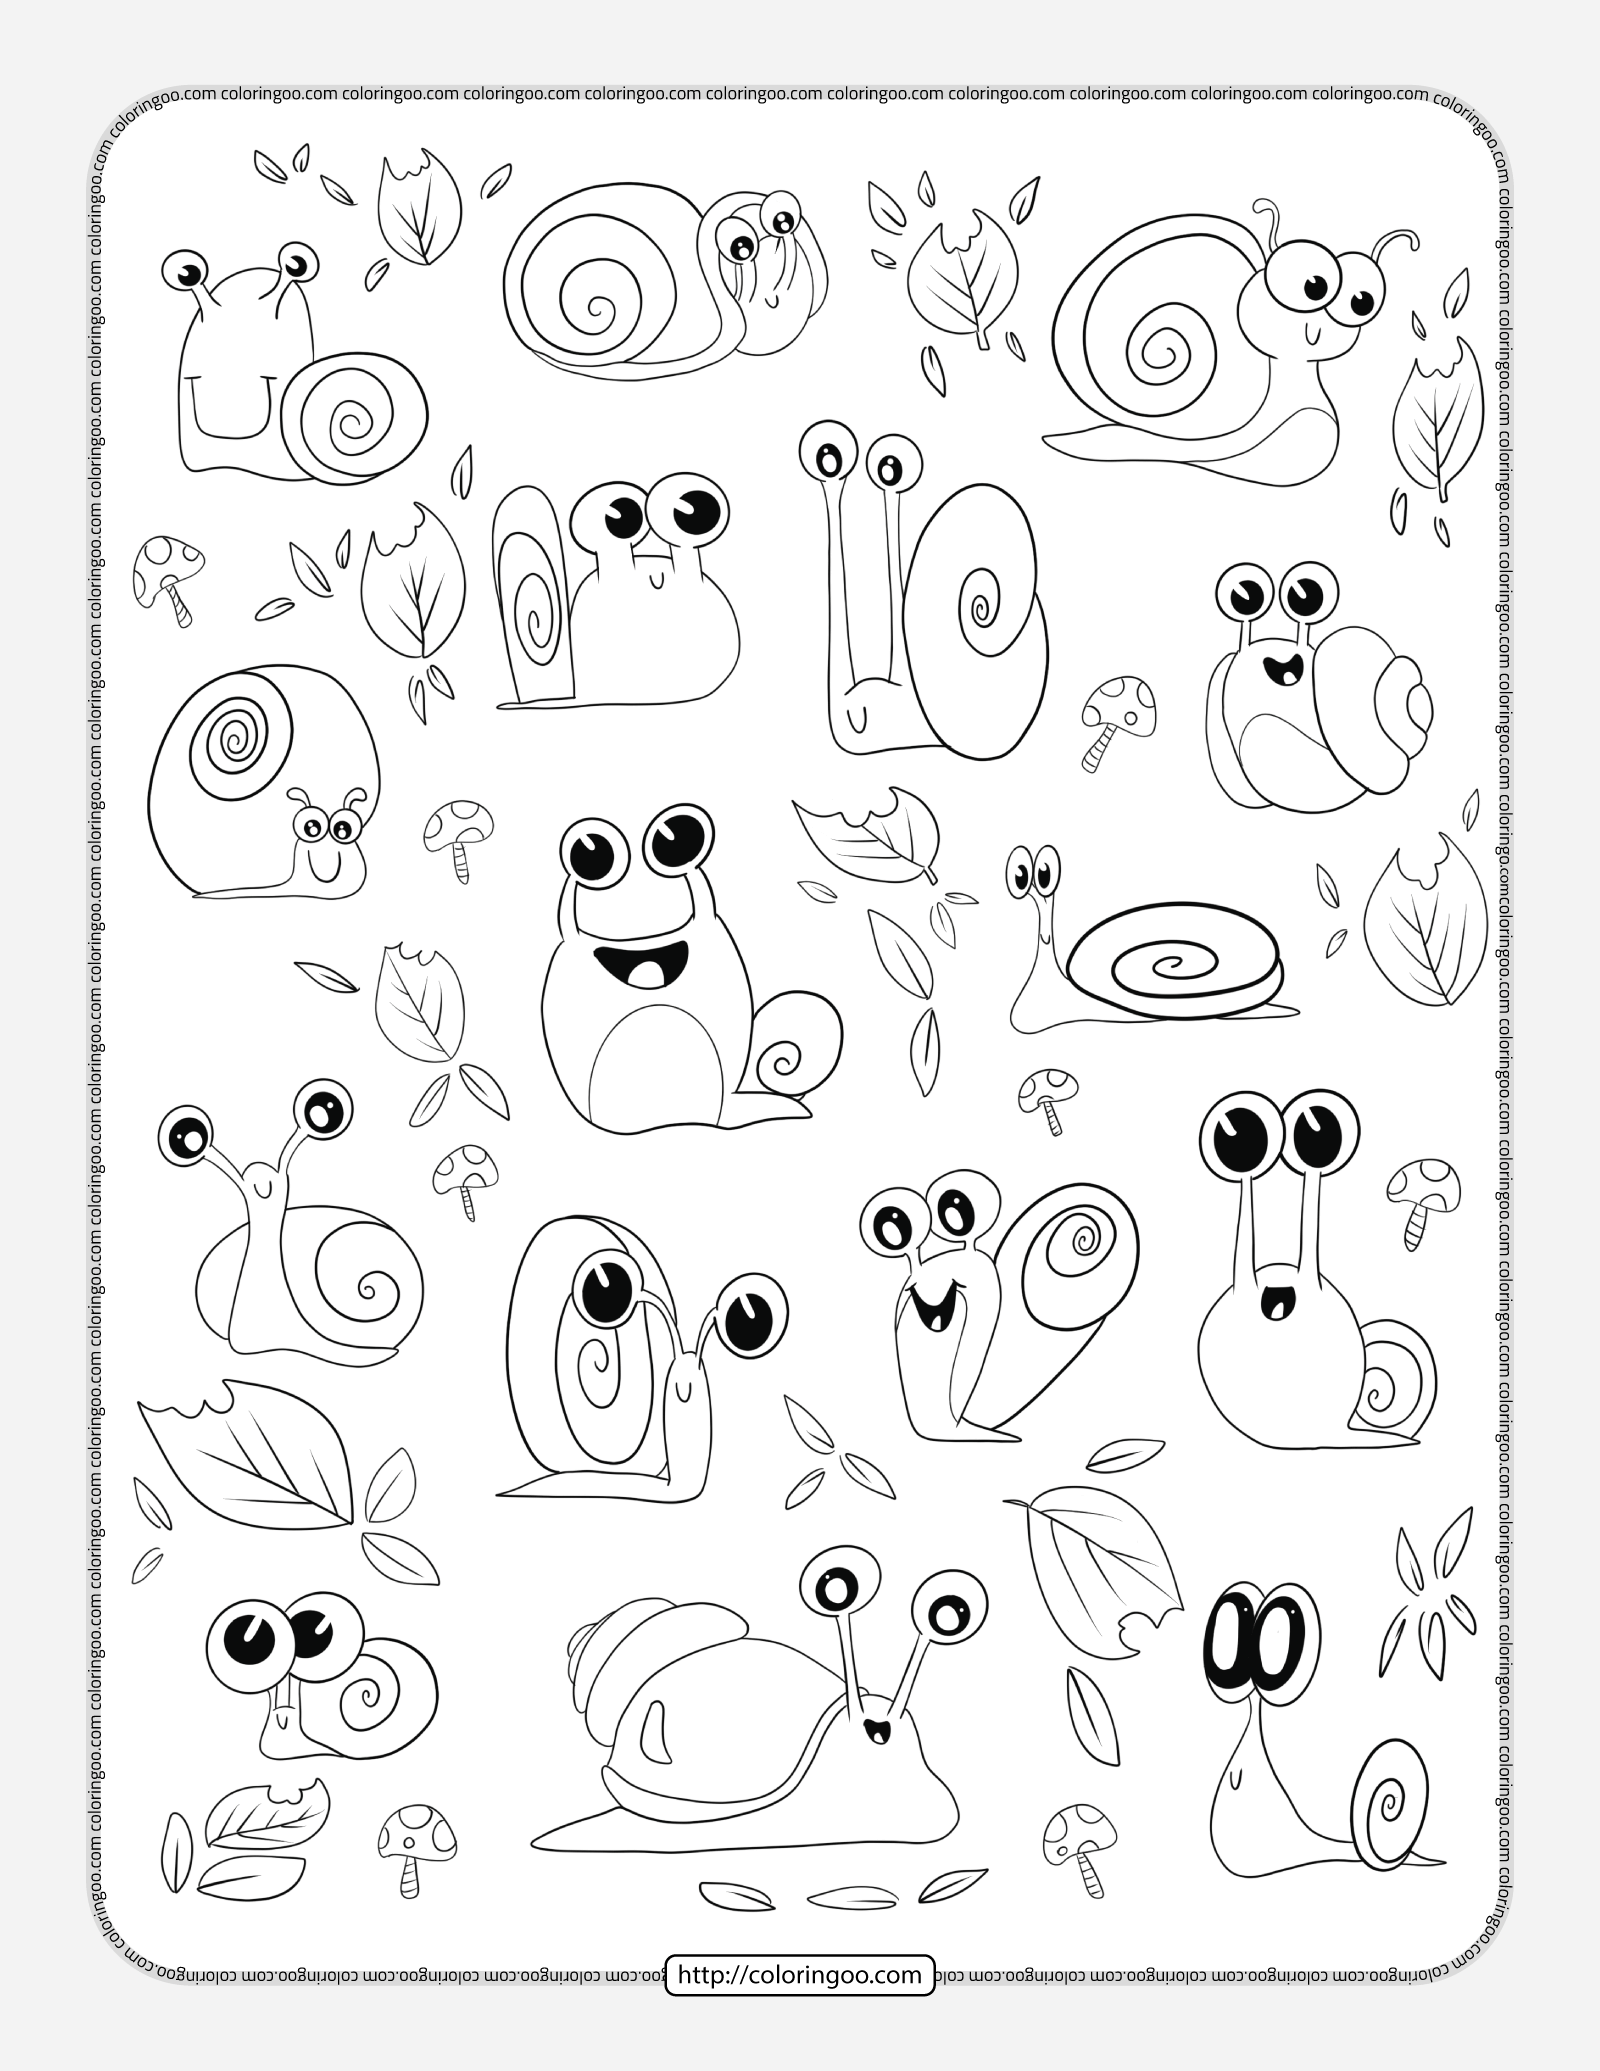 snails doodle pdf coloring page